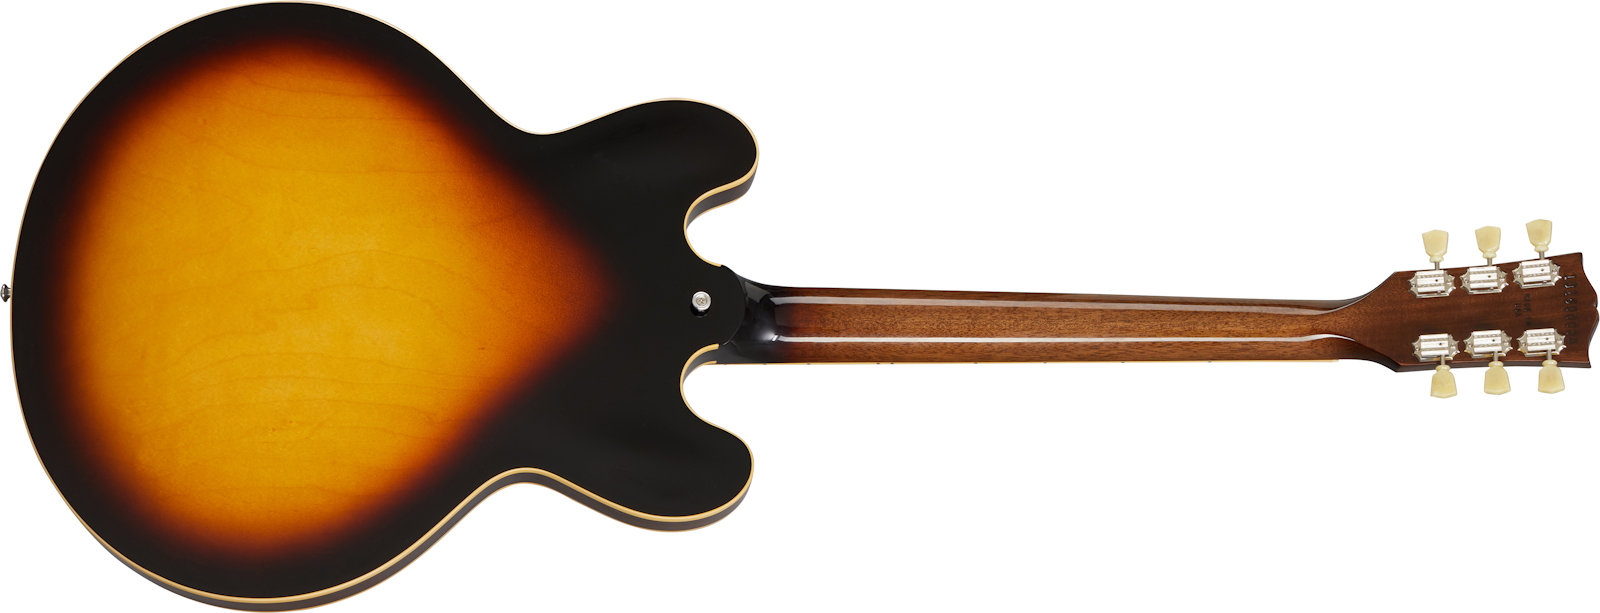 Gibson Es-335 Dot Lh Original 2020 Gaucher 2h Ht Rw - Vintage Burst - Linkshandige elektrische gitaar - Variation 1